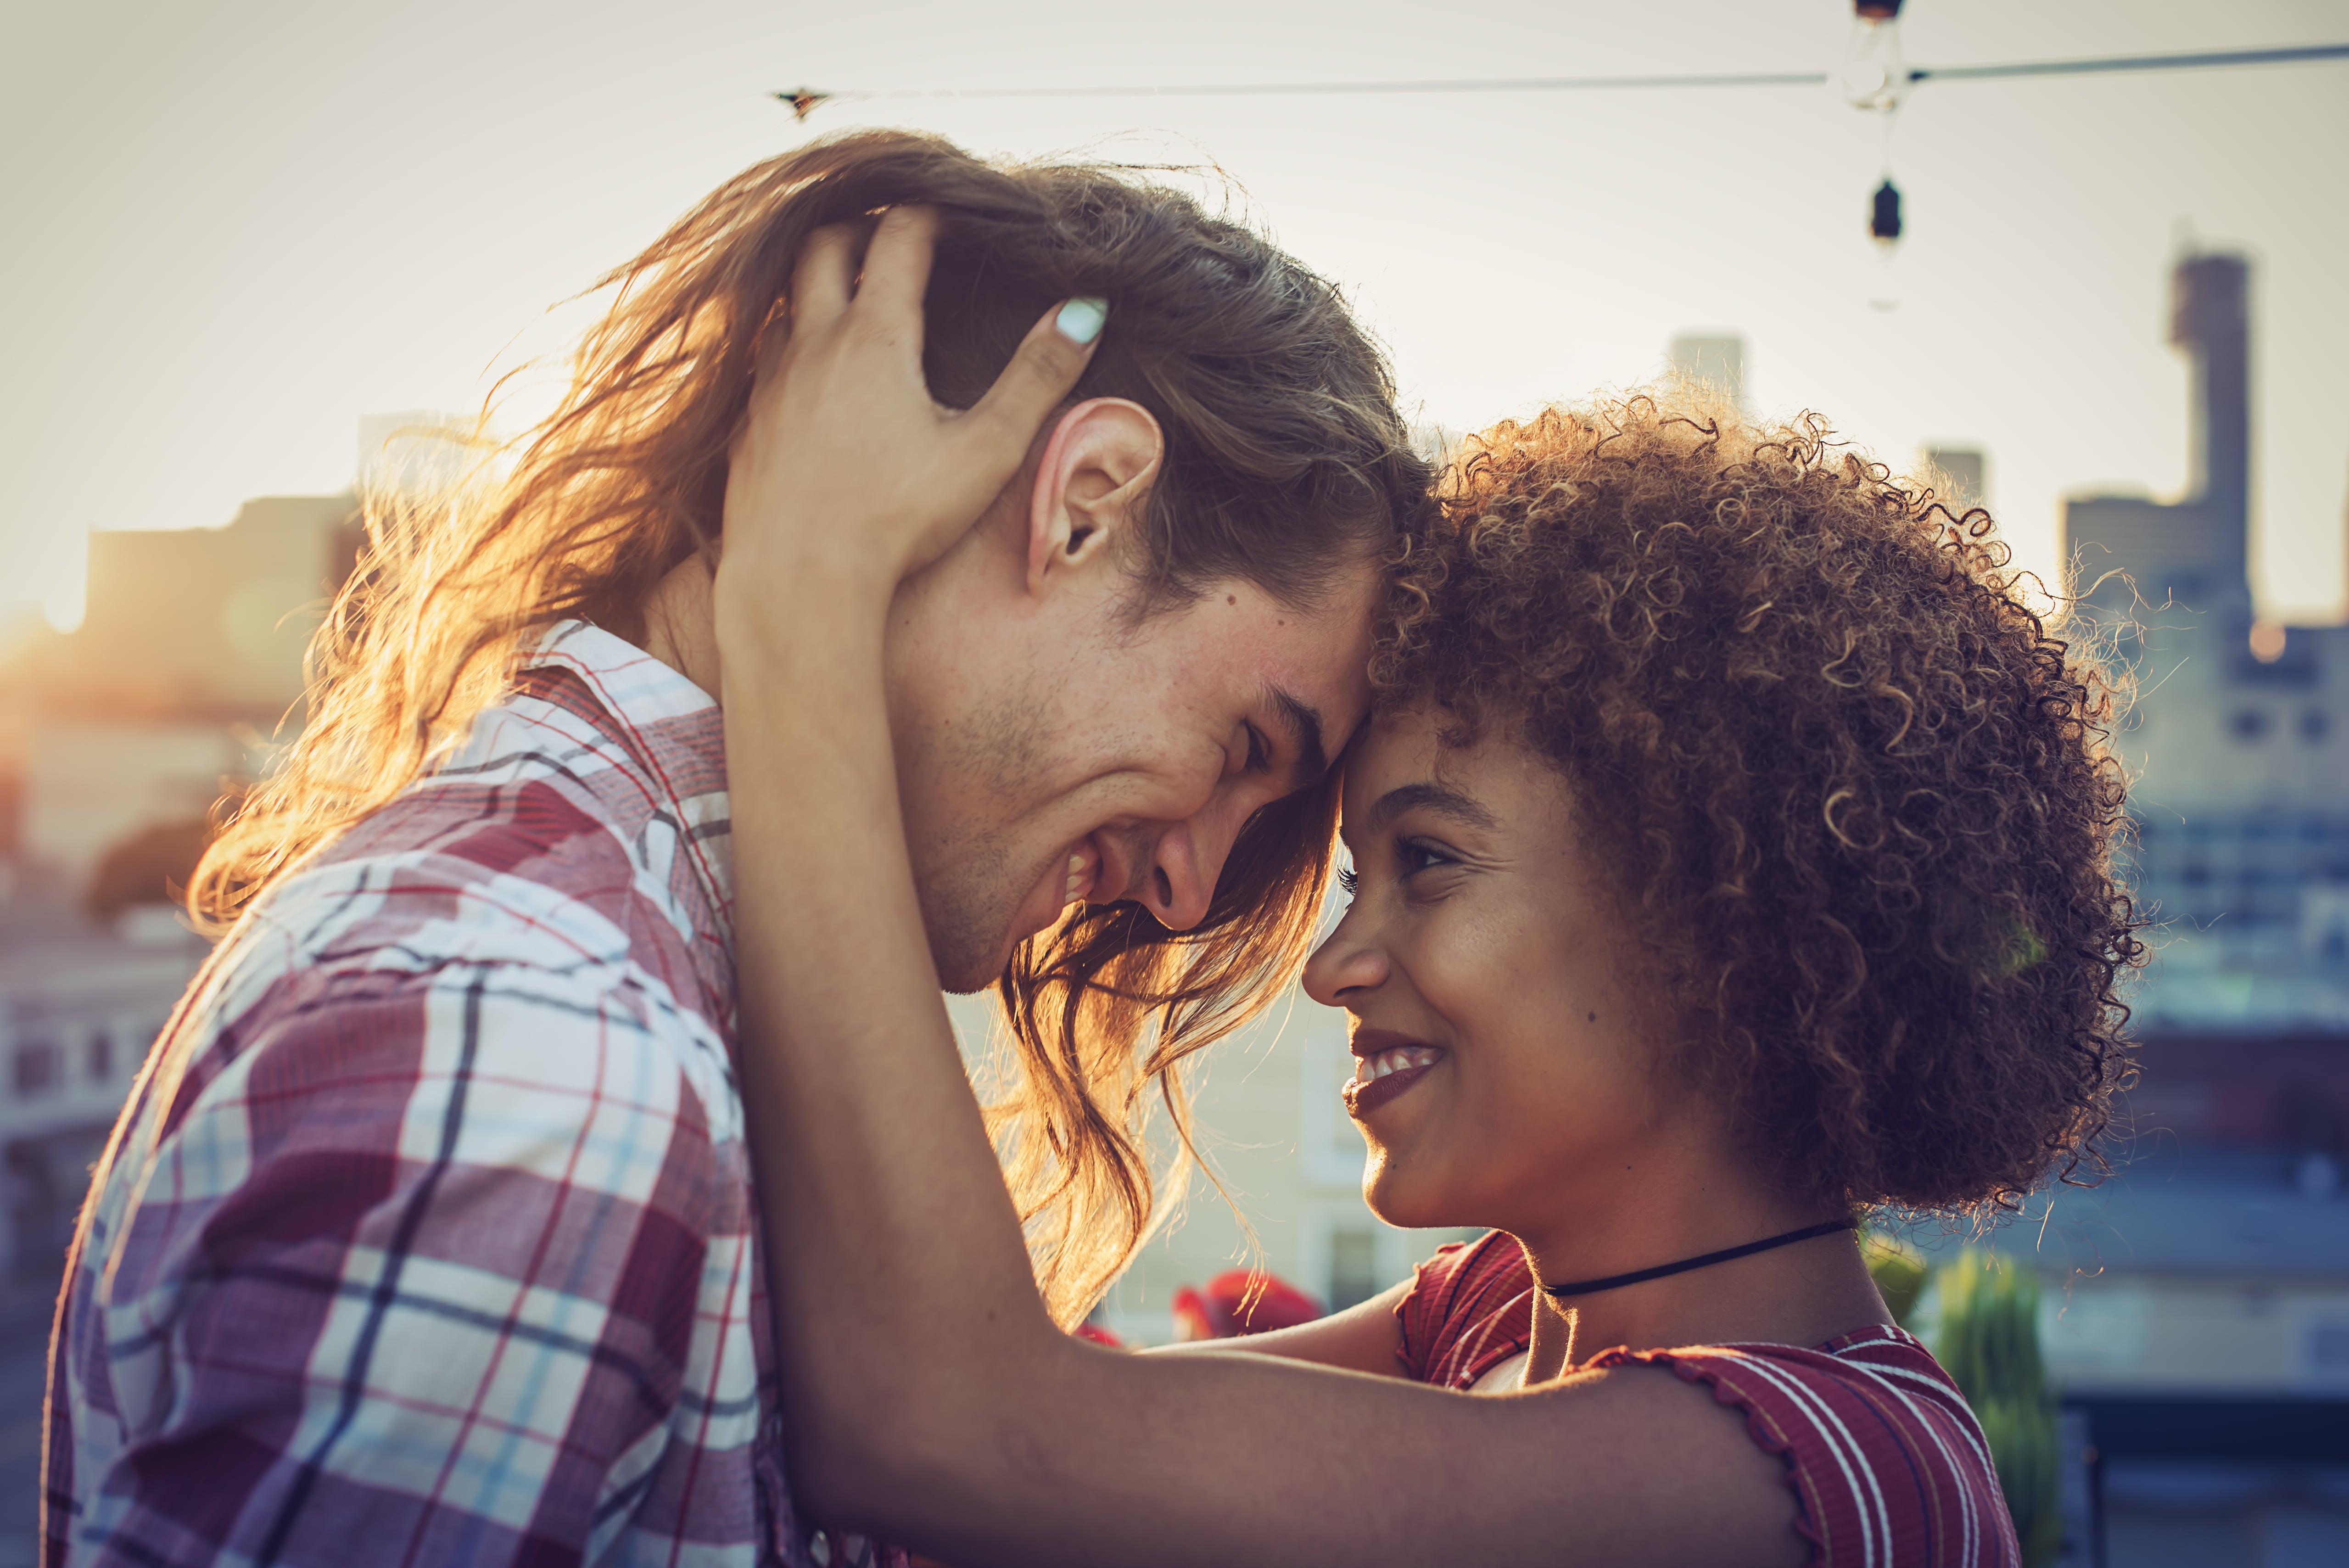 Autocontrole emocional no relacionamento: 5 dicas de como desenvolvê-lo